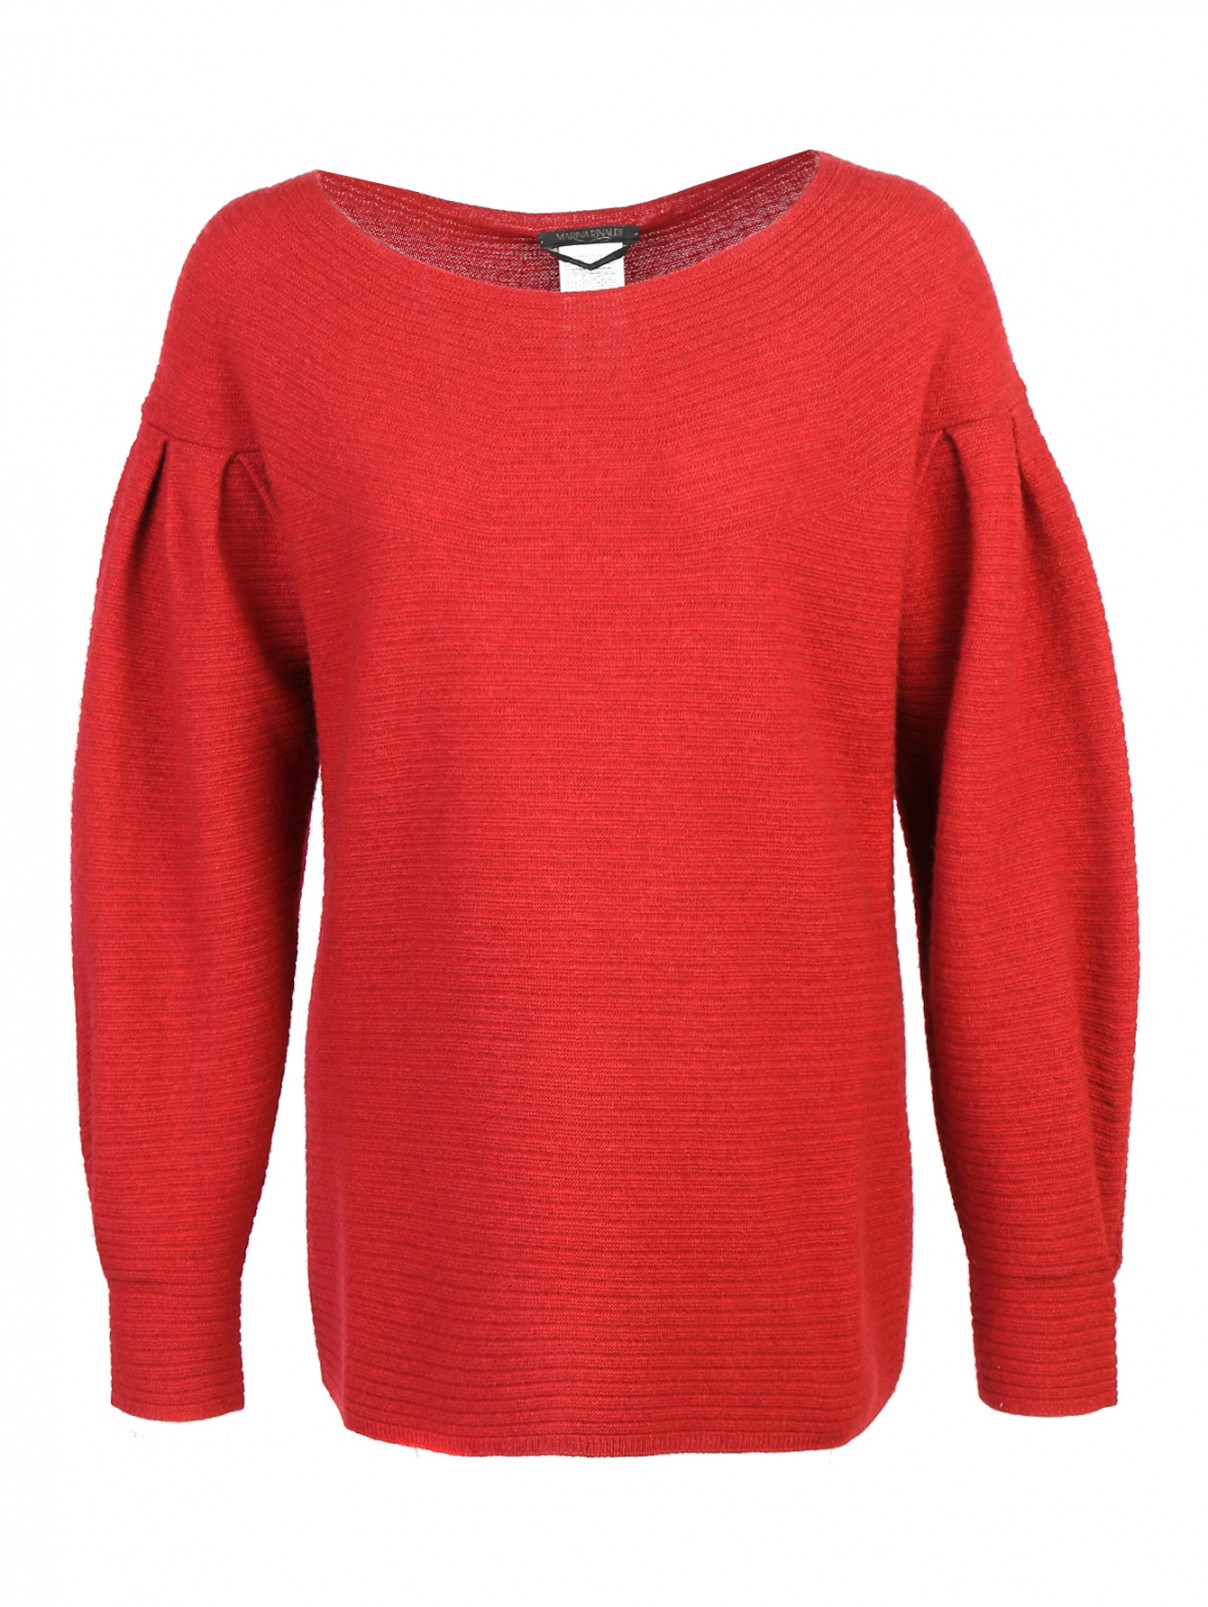 Джемпер из смесовой шерсти с объемными рукавами Marina Rinaldi  –  Общий вид  – Цвет:  Красный